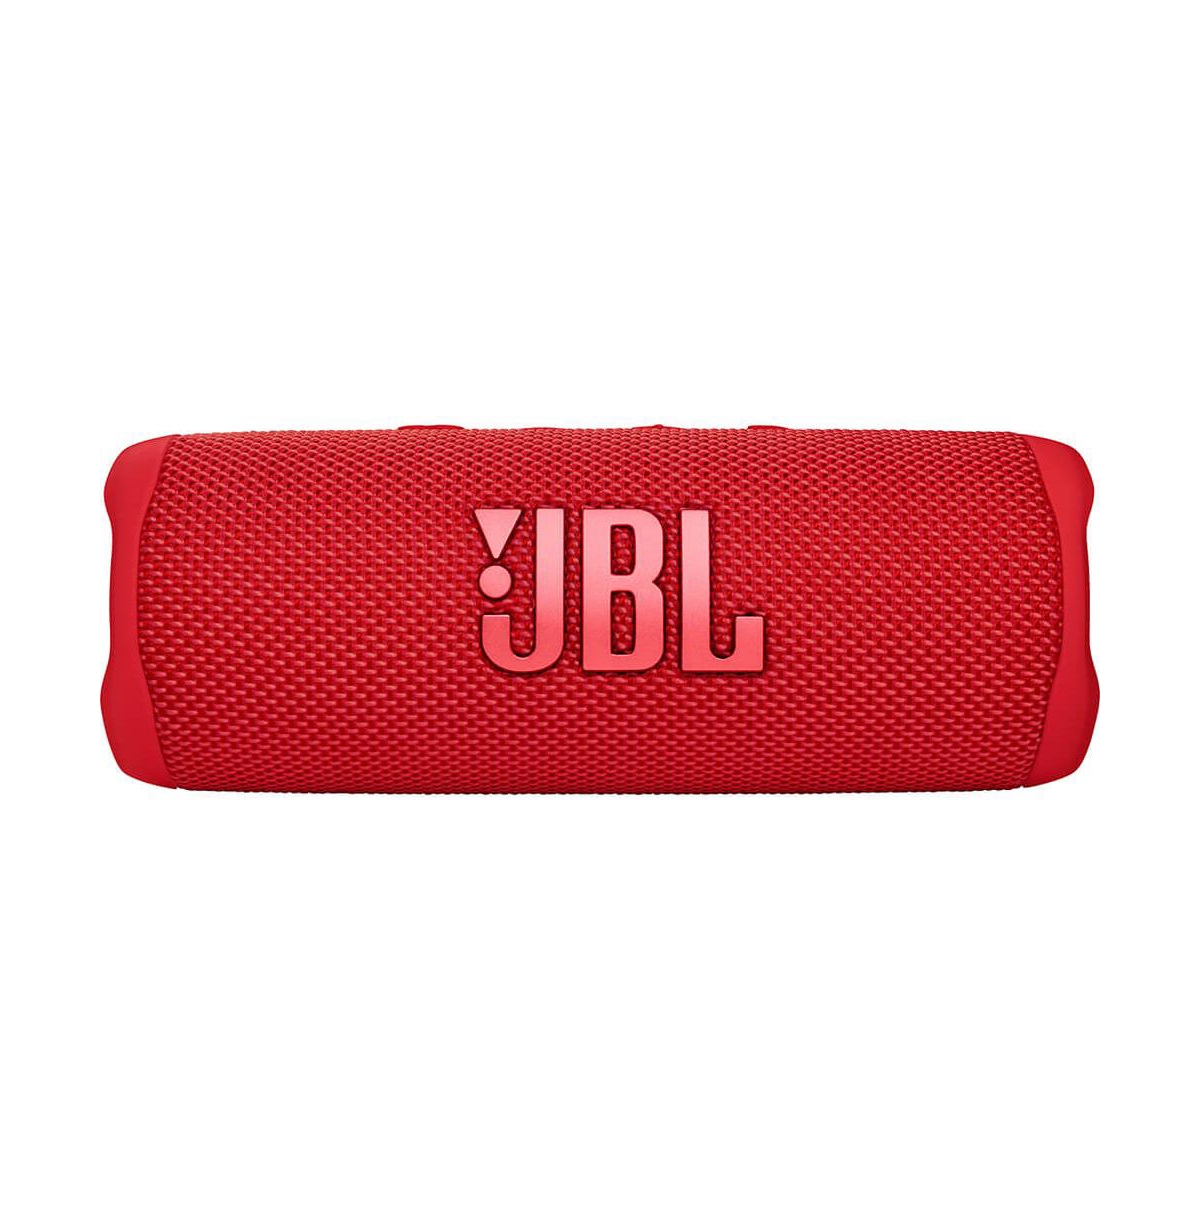 Jbl Flip6 Red Portable Waterproof Speaker